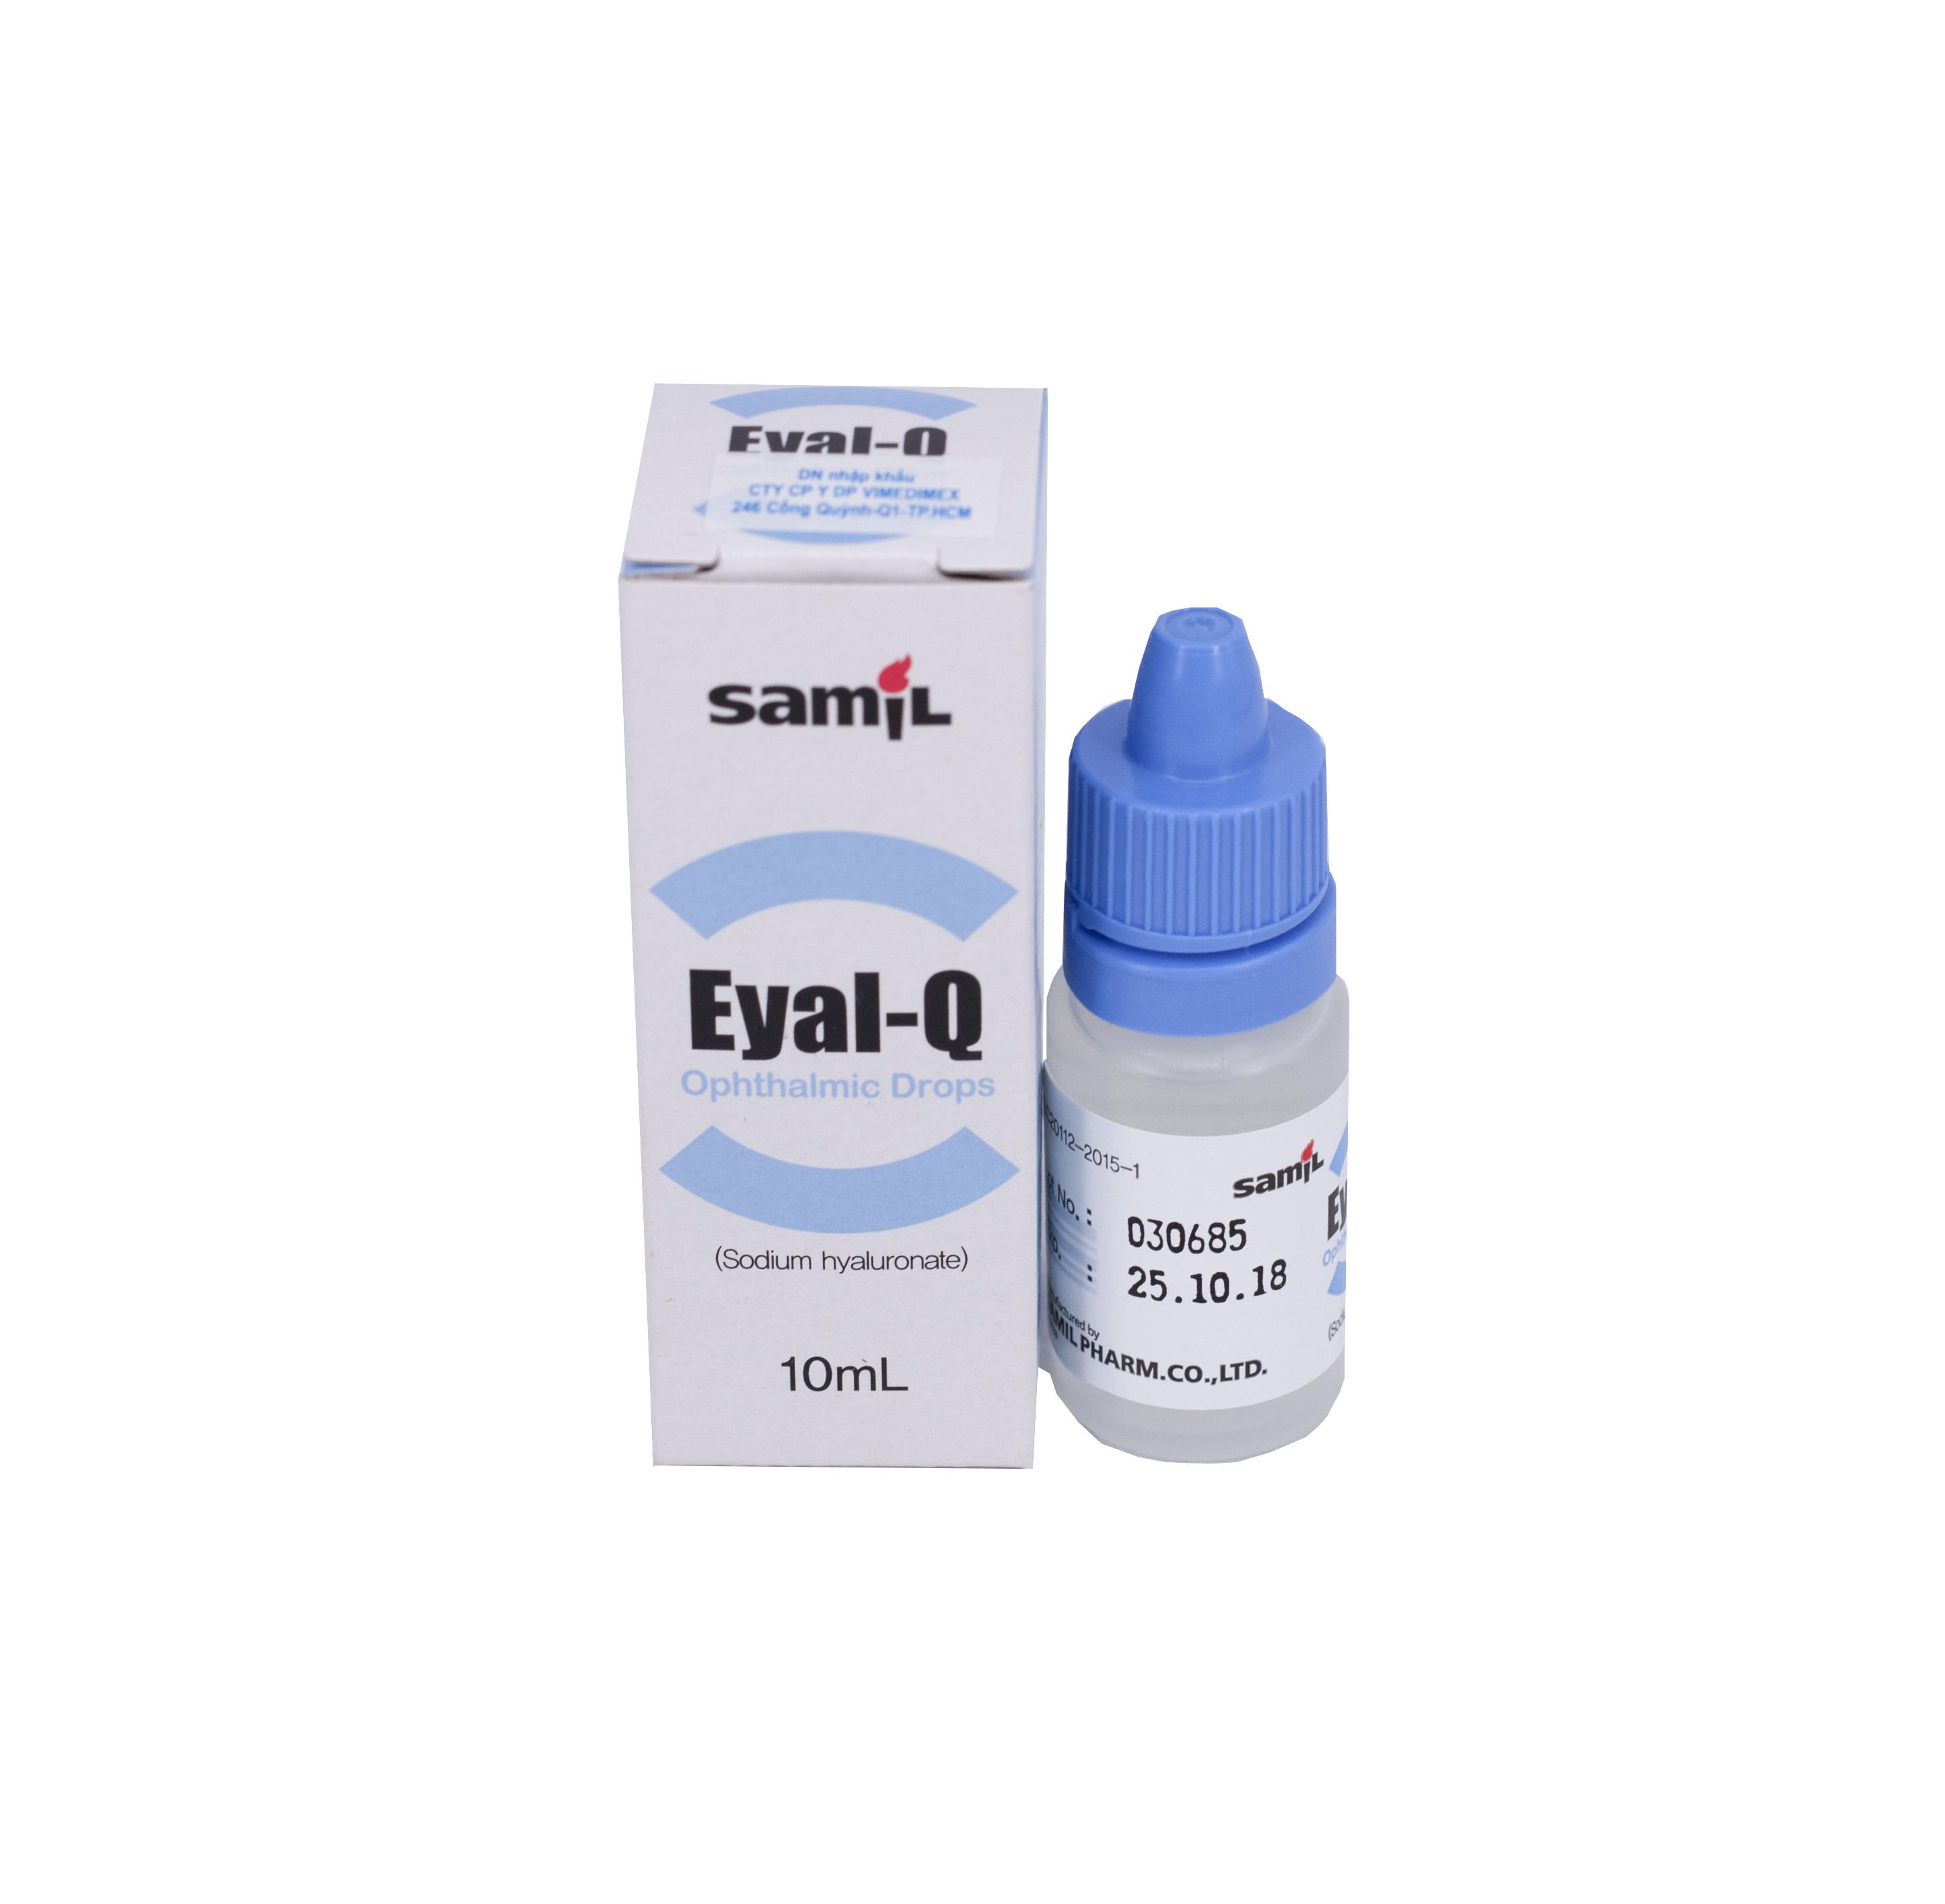 Eyal-Q (Sodium Hyaluronate) Samil (C/5ml)